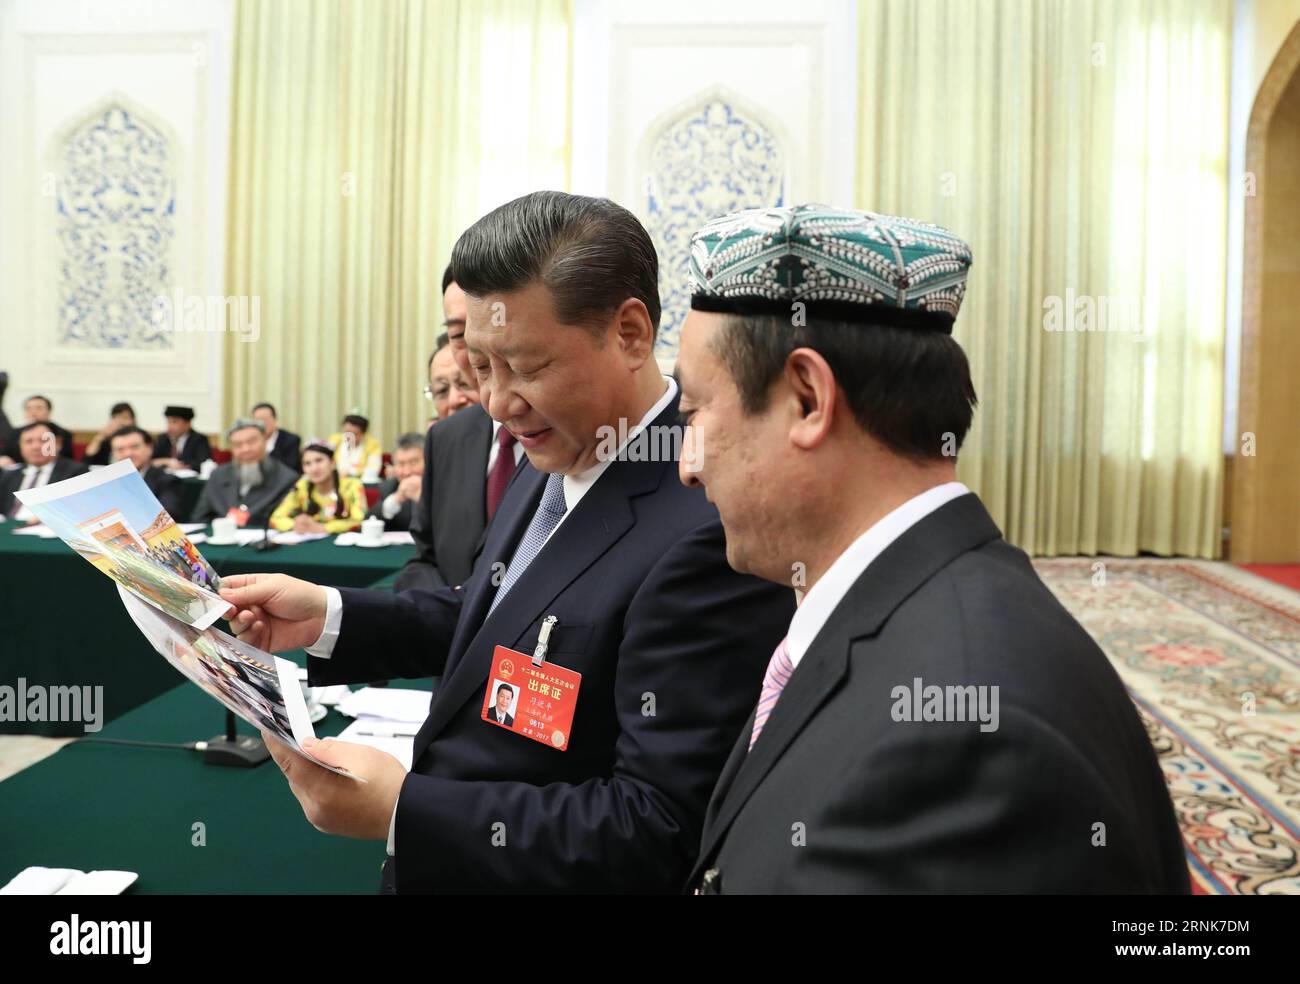 (170310) -- PECHINO, 10 marzo 2017 -- il presidente cinese Xi Jinping guarda le foto della famiglia di Kurban Tulum quando si unisce a una tavola rotonda con i deputati al 12 ° Congresso Nazionale del popolo (NPC) della regione autonoma di Xinjiang Uygur durante la sessione annuale dell'NPC a Pechino, capitale della Cina, il 10 marzo 2017. XI ha scritto a una figlia di Kurban Tulum, che è stata ricevuta due volte dal defunto presidente Mao Zedong, sottolineando la solidarietà etnica e gli sforzi per costruire un futuro luminoso per lo Xinjiang sotto la guida del Partito Comunista Cinese (CPC). (ZKR) (DUE SESSIONI)CINA-PECHINO- Foto Stock